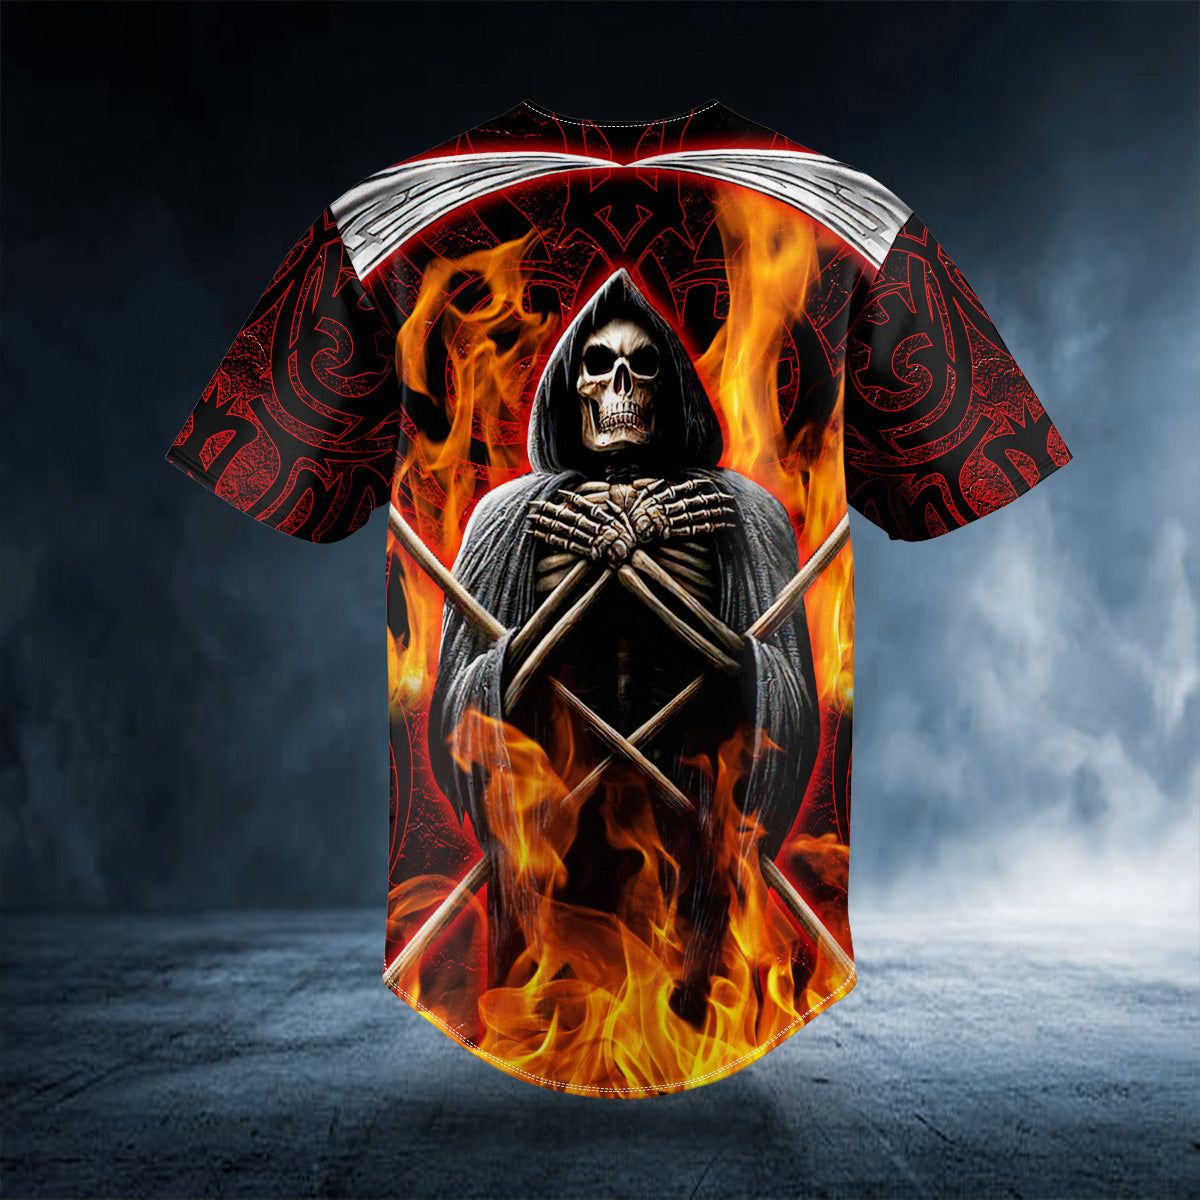 death note fire grim reaper skull baseball jersey bsj 857 0o9rq